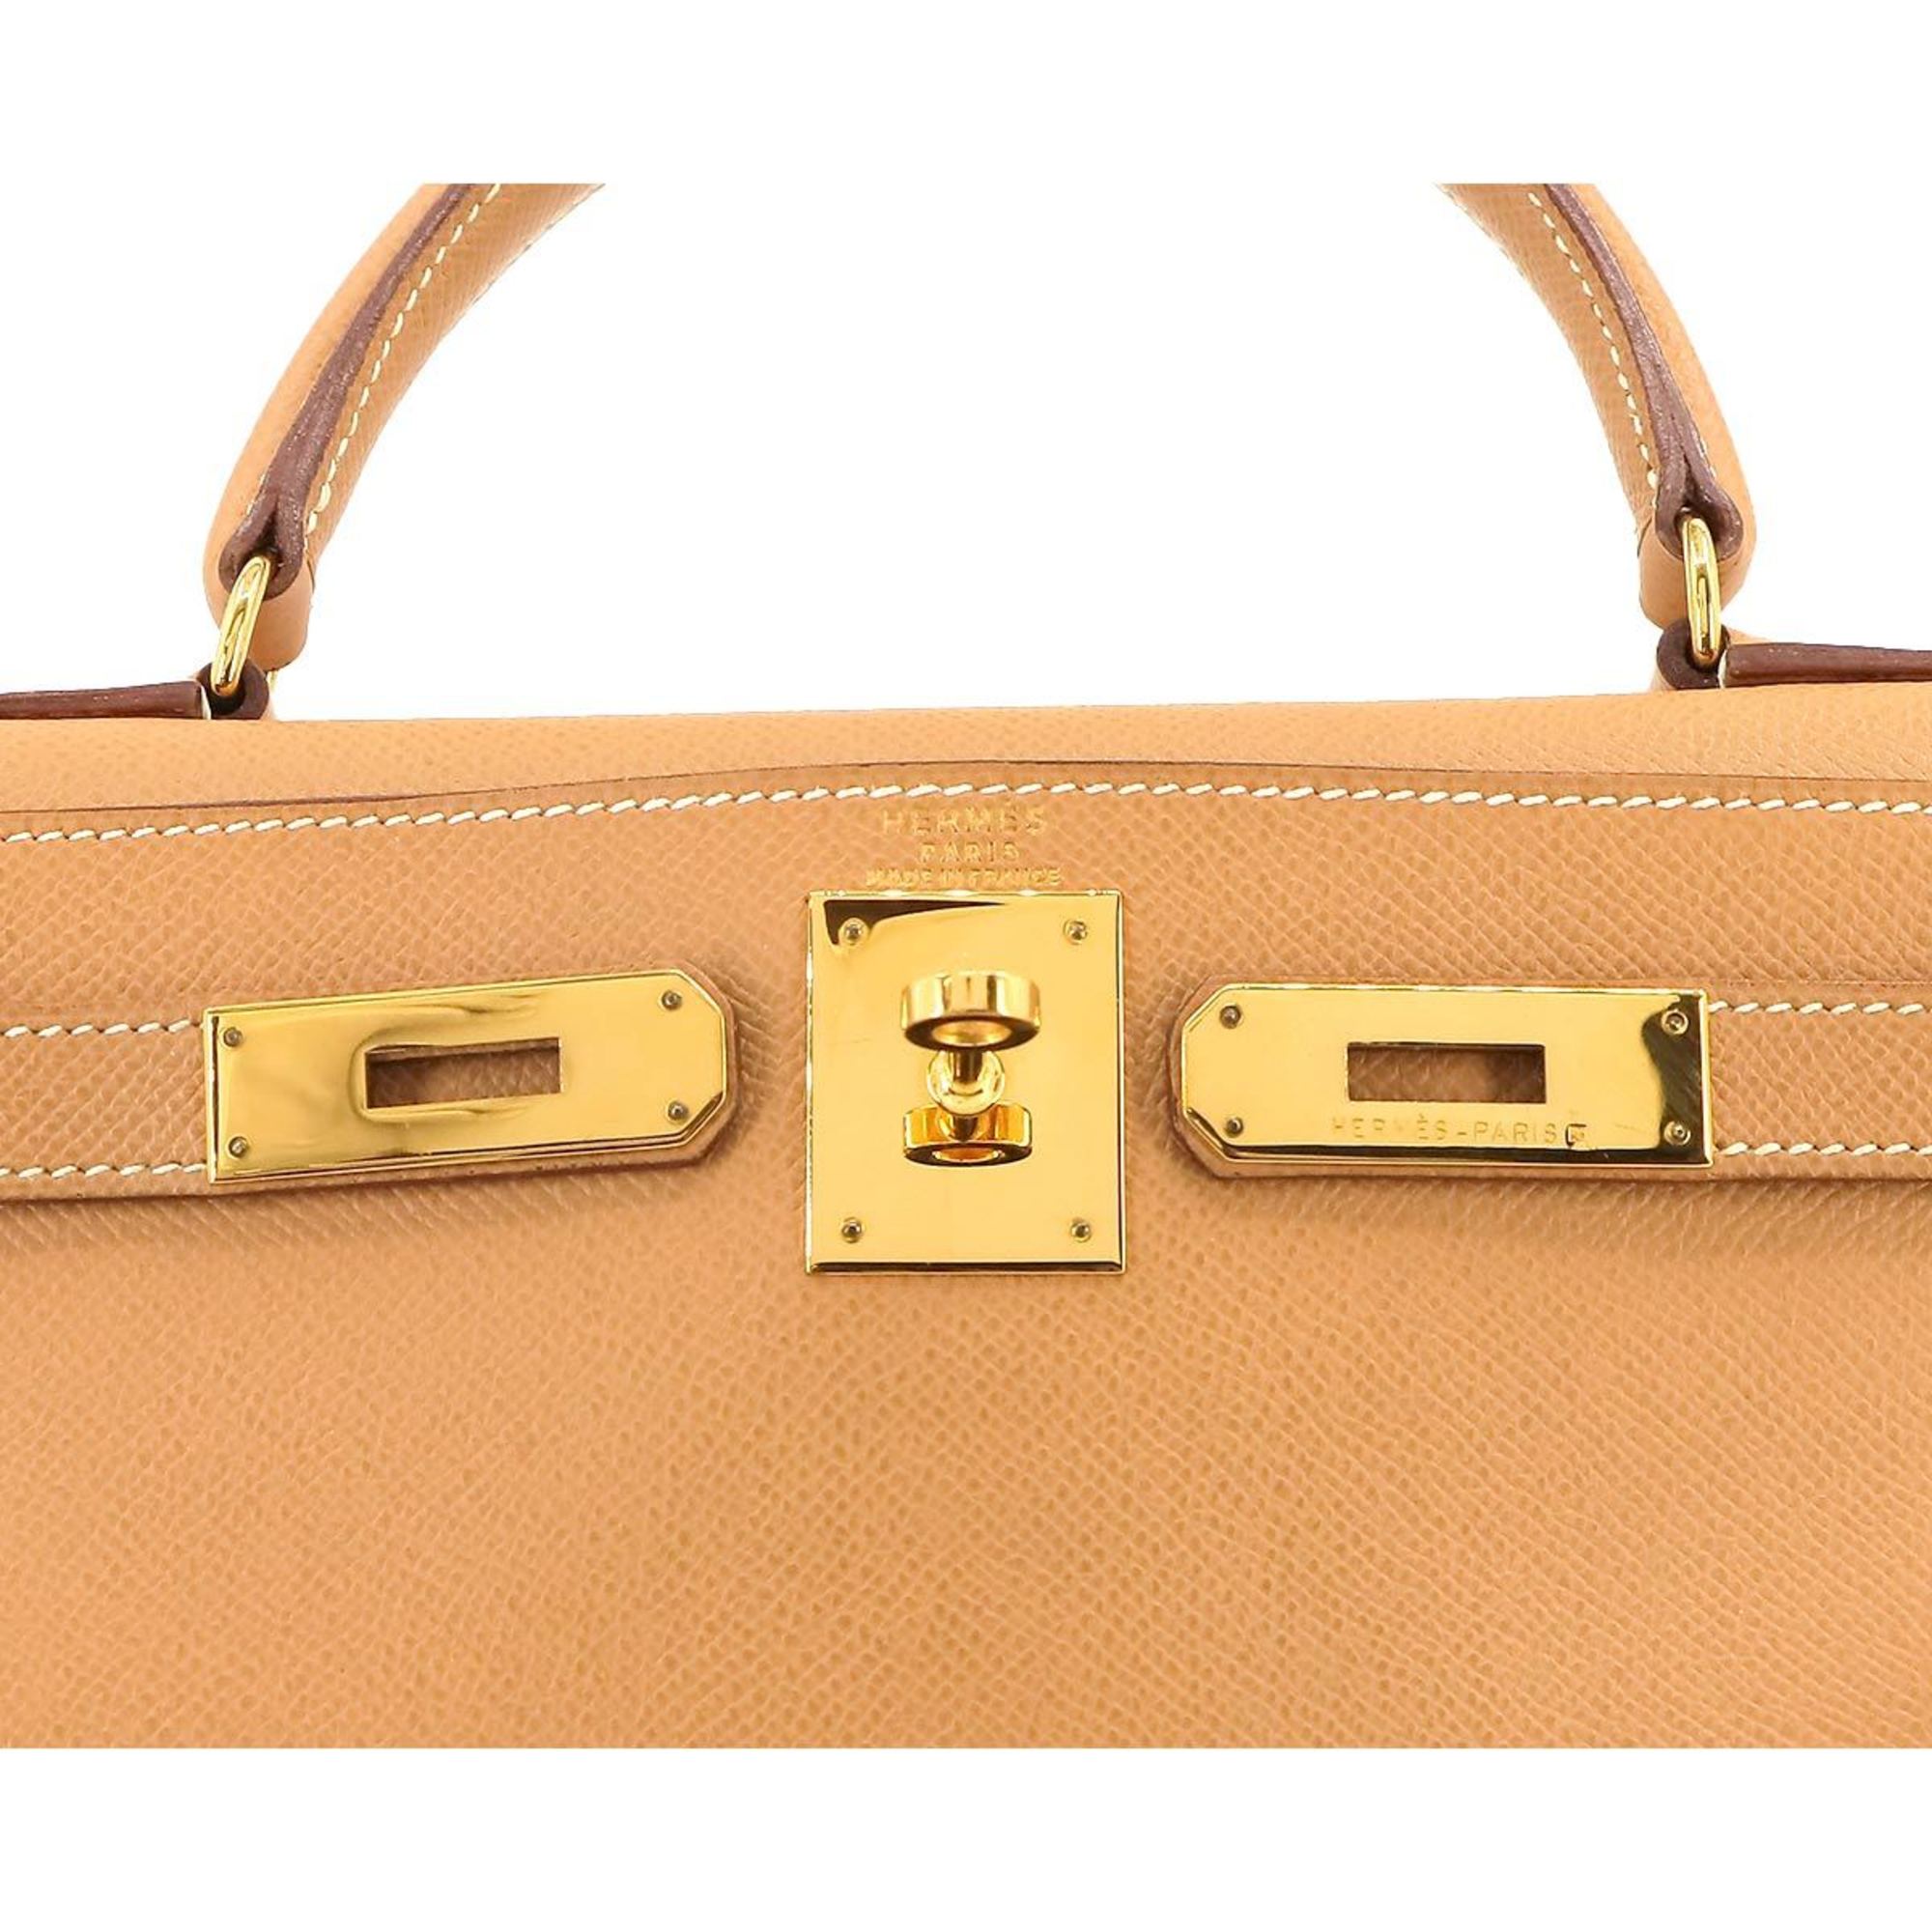 Hermes Kelly 28 2way hand shoulder bag, Cushvel Epsom, natural, inner stitching, 〇Z engraved, gold hardware,